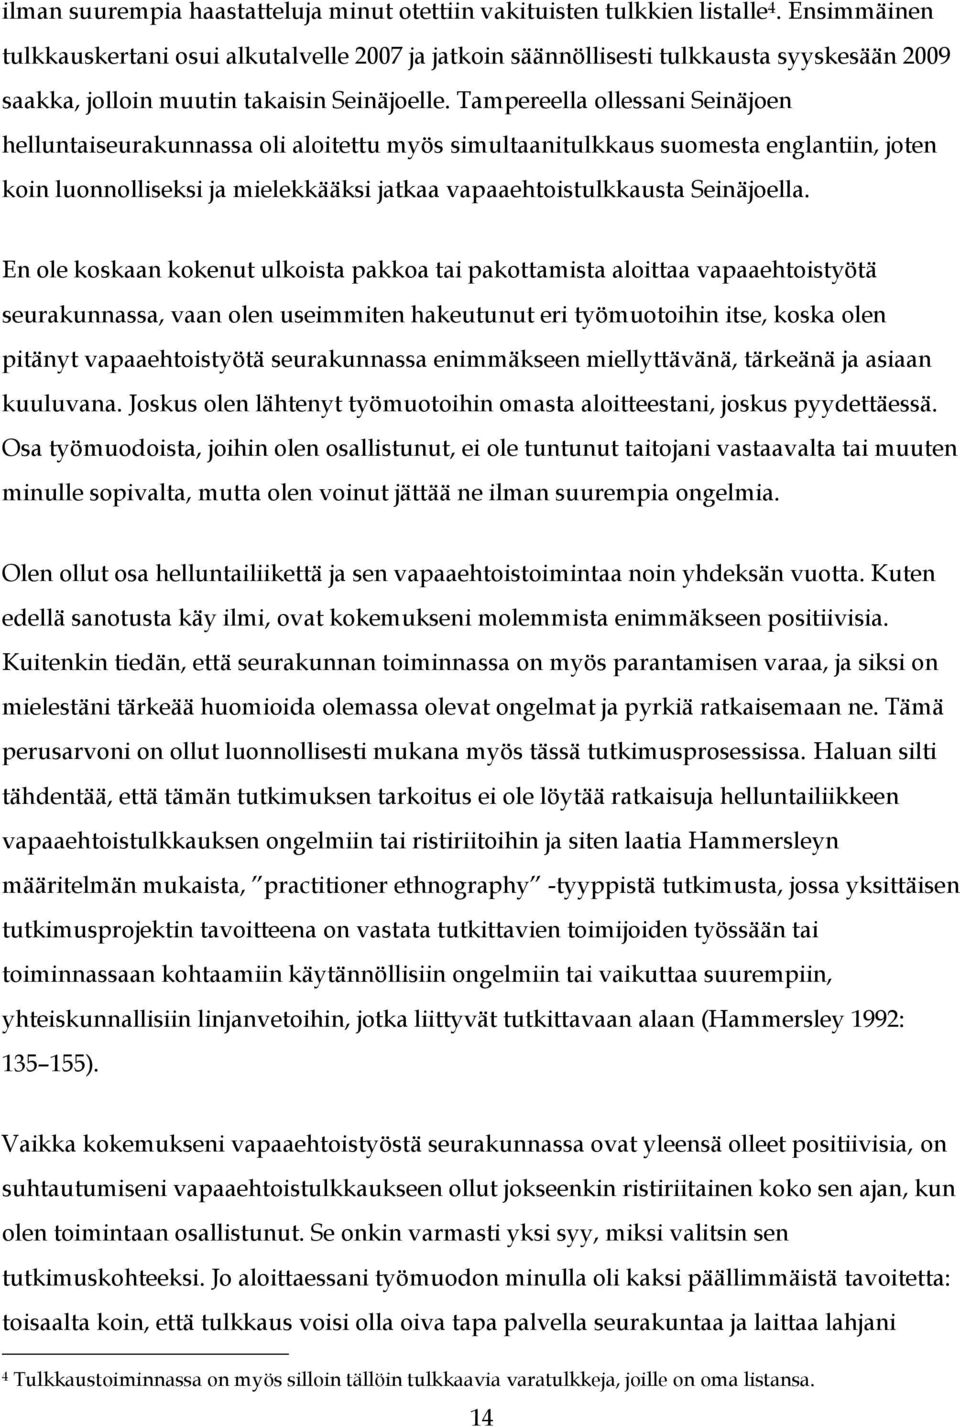 Tampereella ollessani Seinäjoen helluntaiseurakunnassa oli aloitettu myös simultaanitulkkaus suomesta englantiin, joten koin luonnolliseksi ja mielekkääksi jatkaa vapaaehtoistulkkausta Seinäjoella.